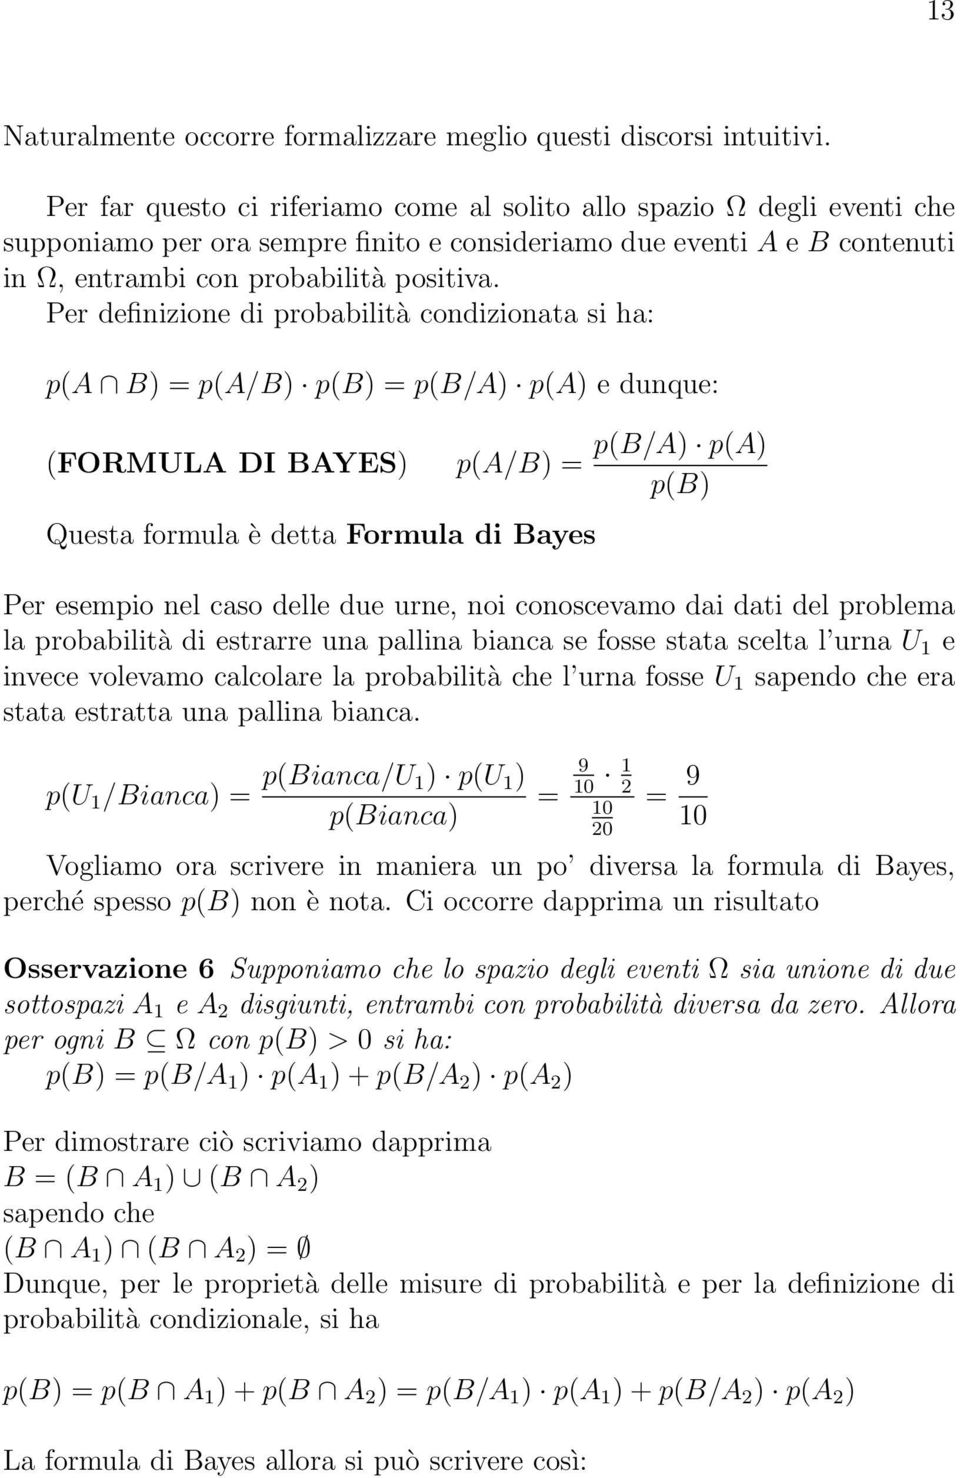 Per definizione di probabilità condizionata si ha: p(a B) = p(a/b) p(b) = p(b/a) p(a) e dunque: (FORMULA DI BAYES) p(a/b) = Questa formula è detta Formula di Bayes p(b/a) p(a) p(b) Per esempio nel